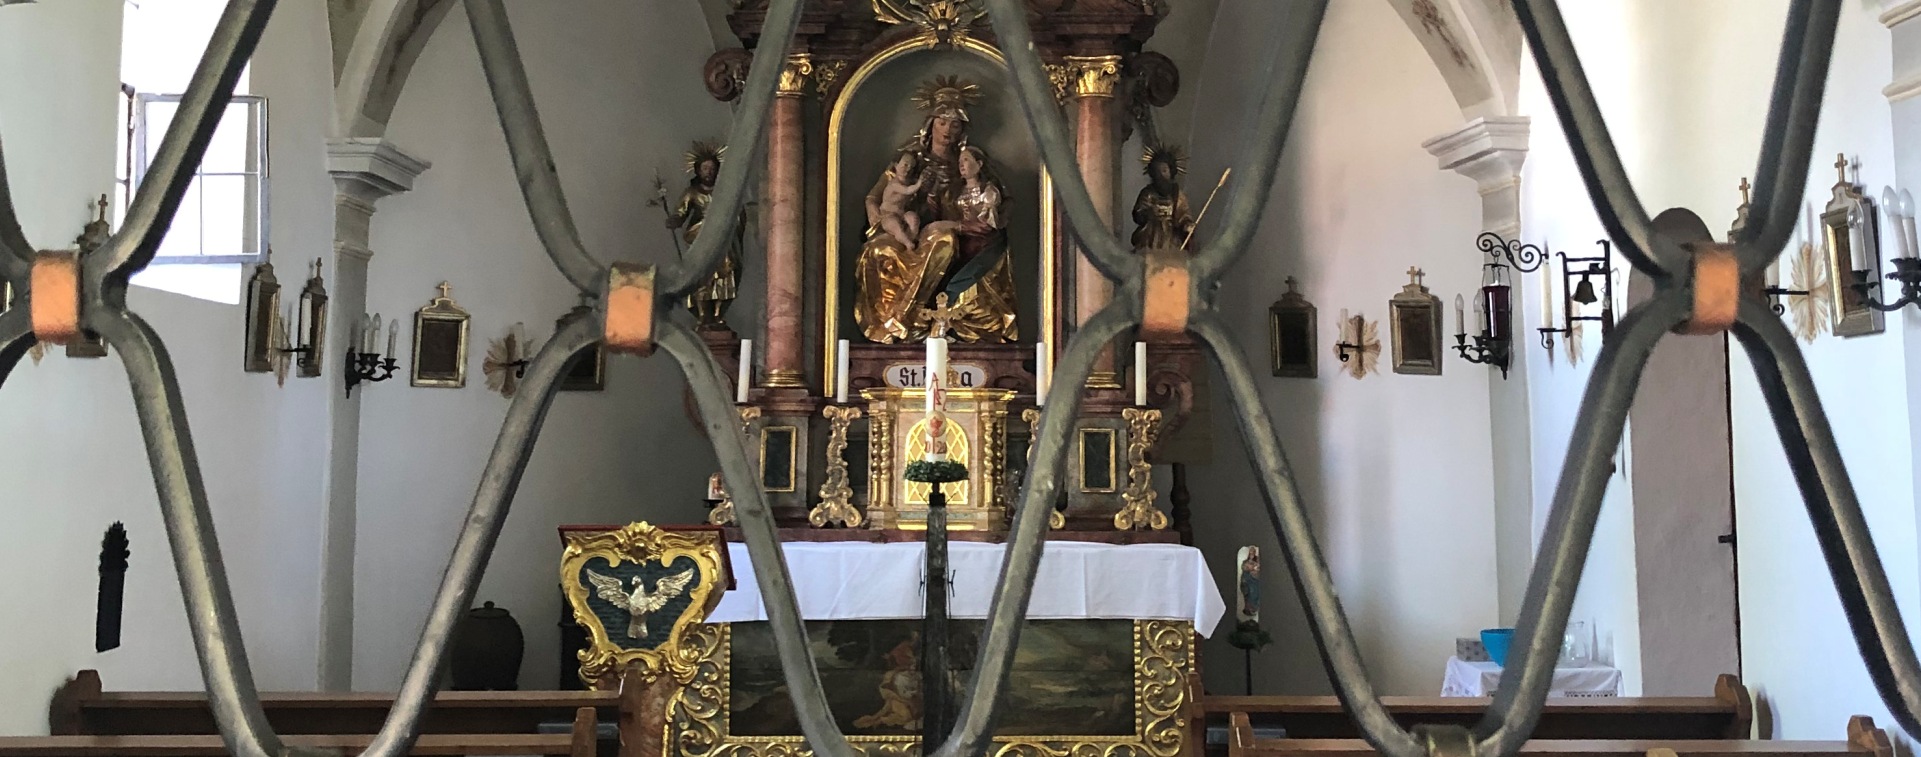 Altar in der Kapelle in Annabrunn